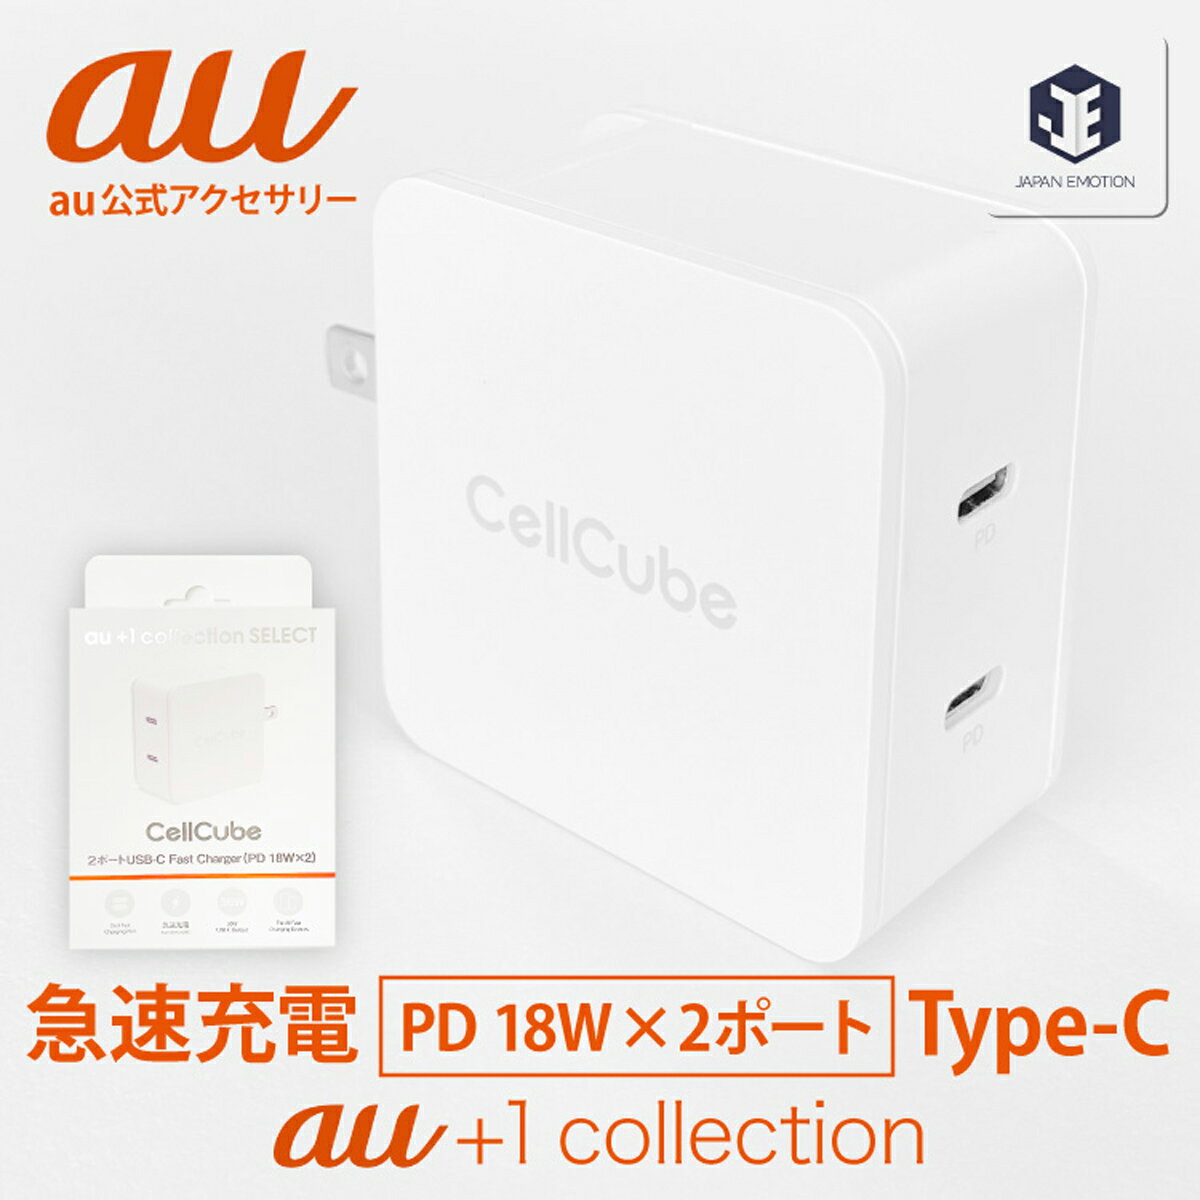 【au 純正 充電器】au +1 collection 純正